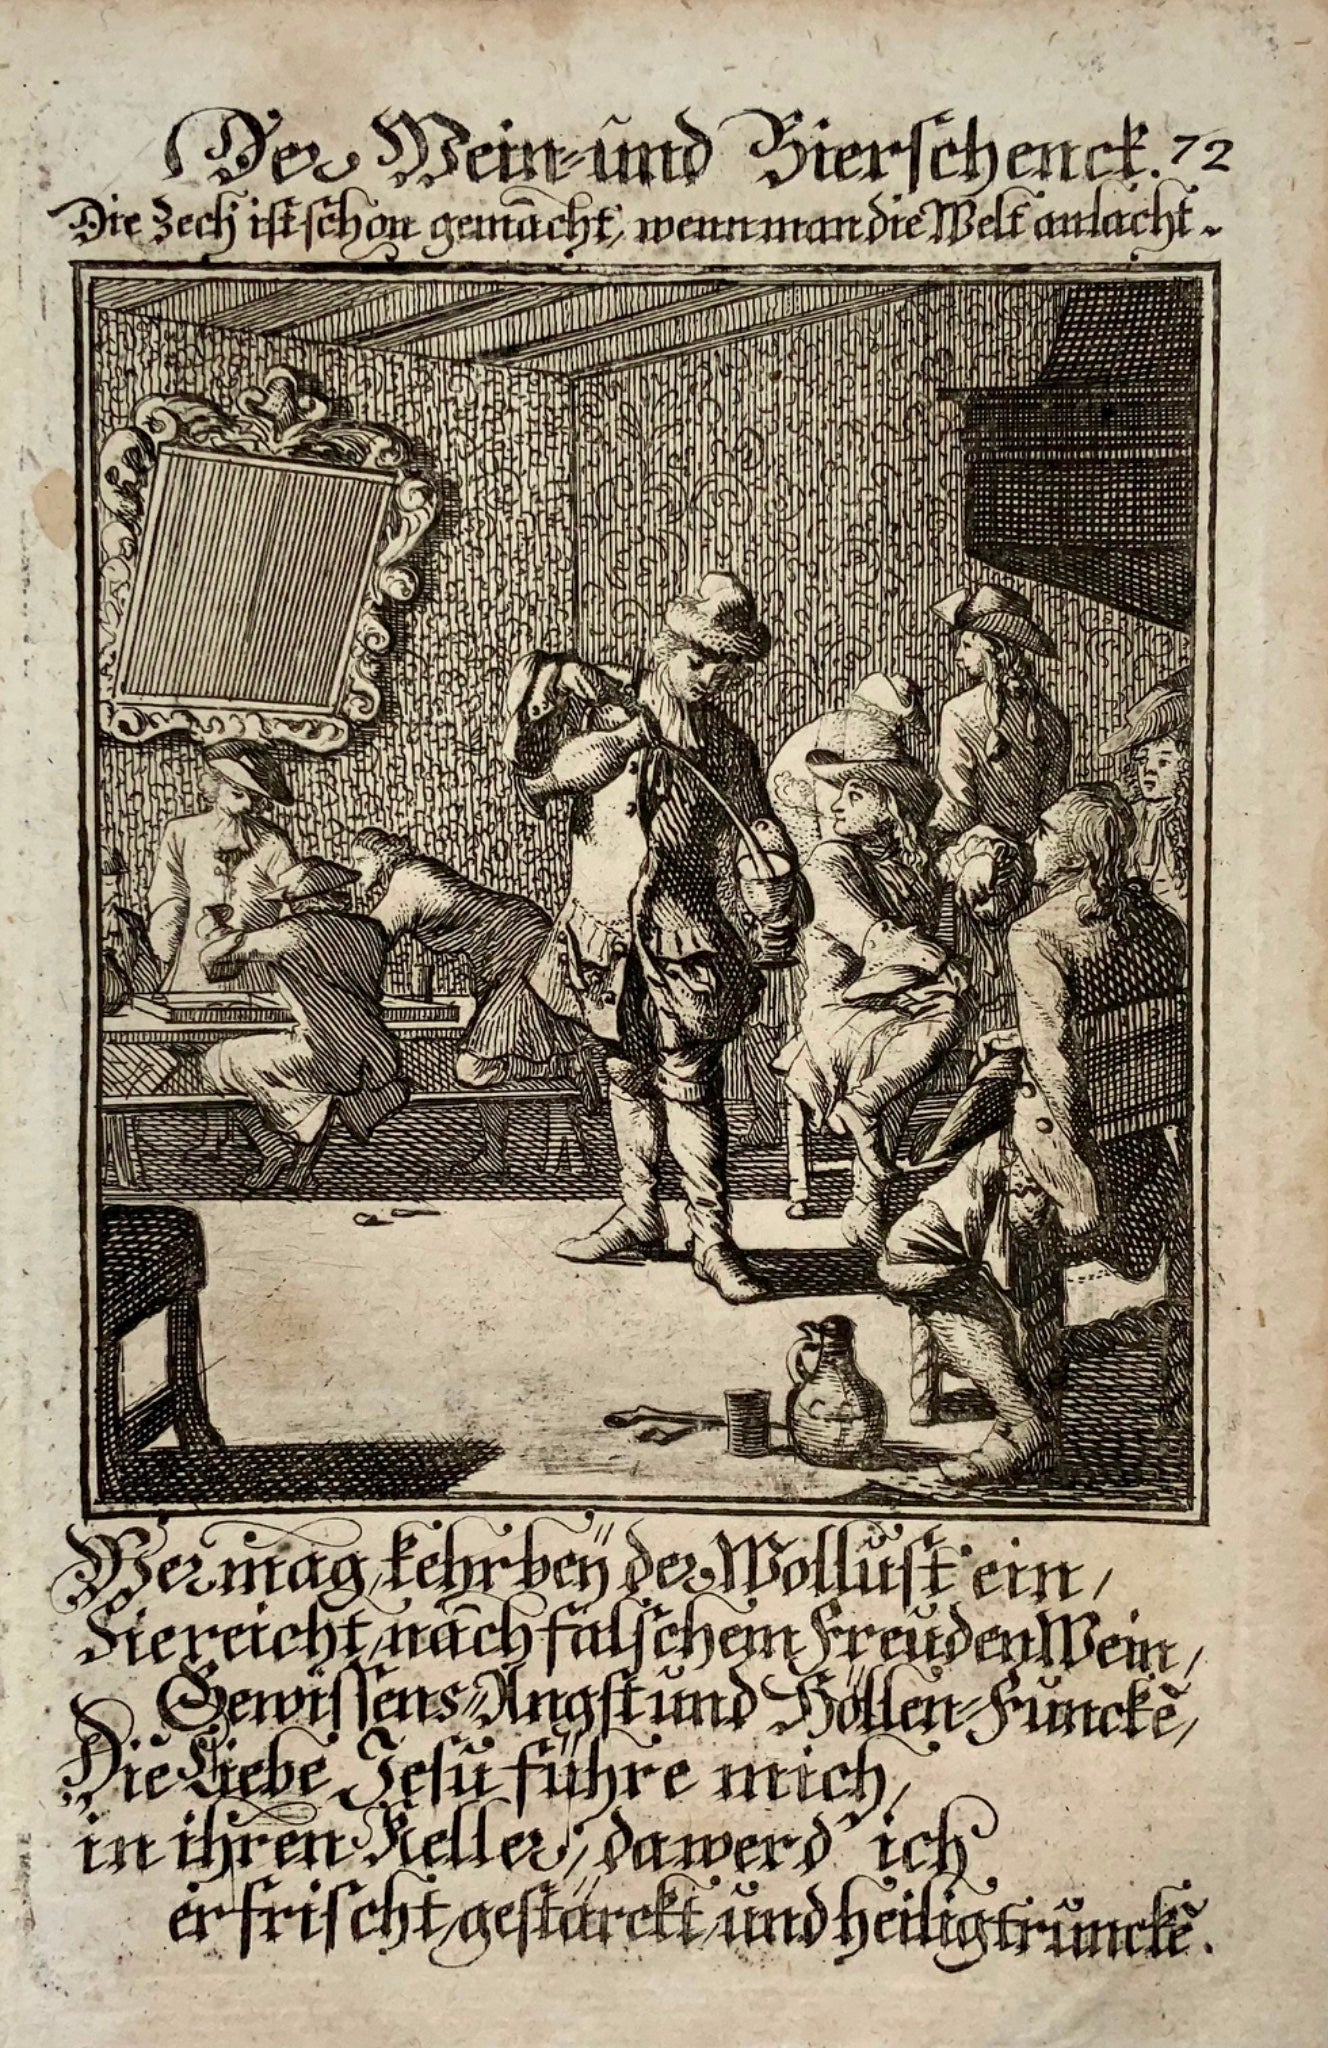 1711 Caspar Luyken, propriétaire, auberge, vin, bière, gravure, métiers